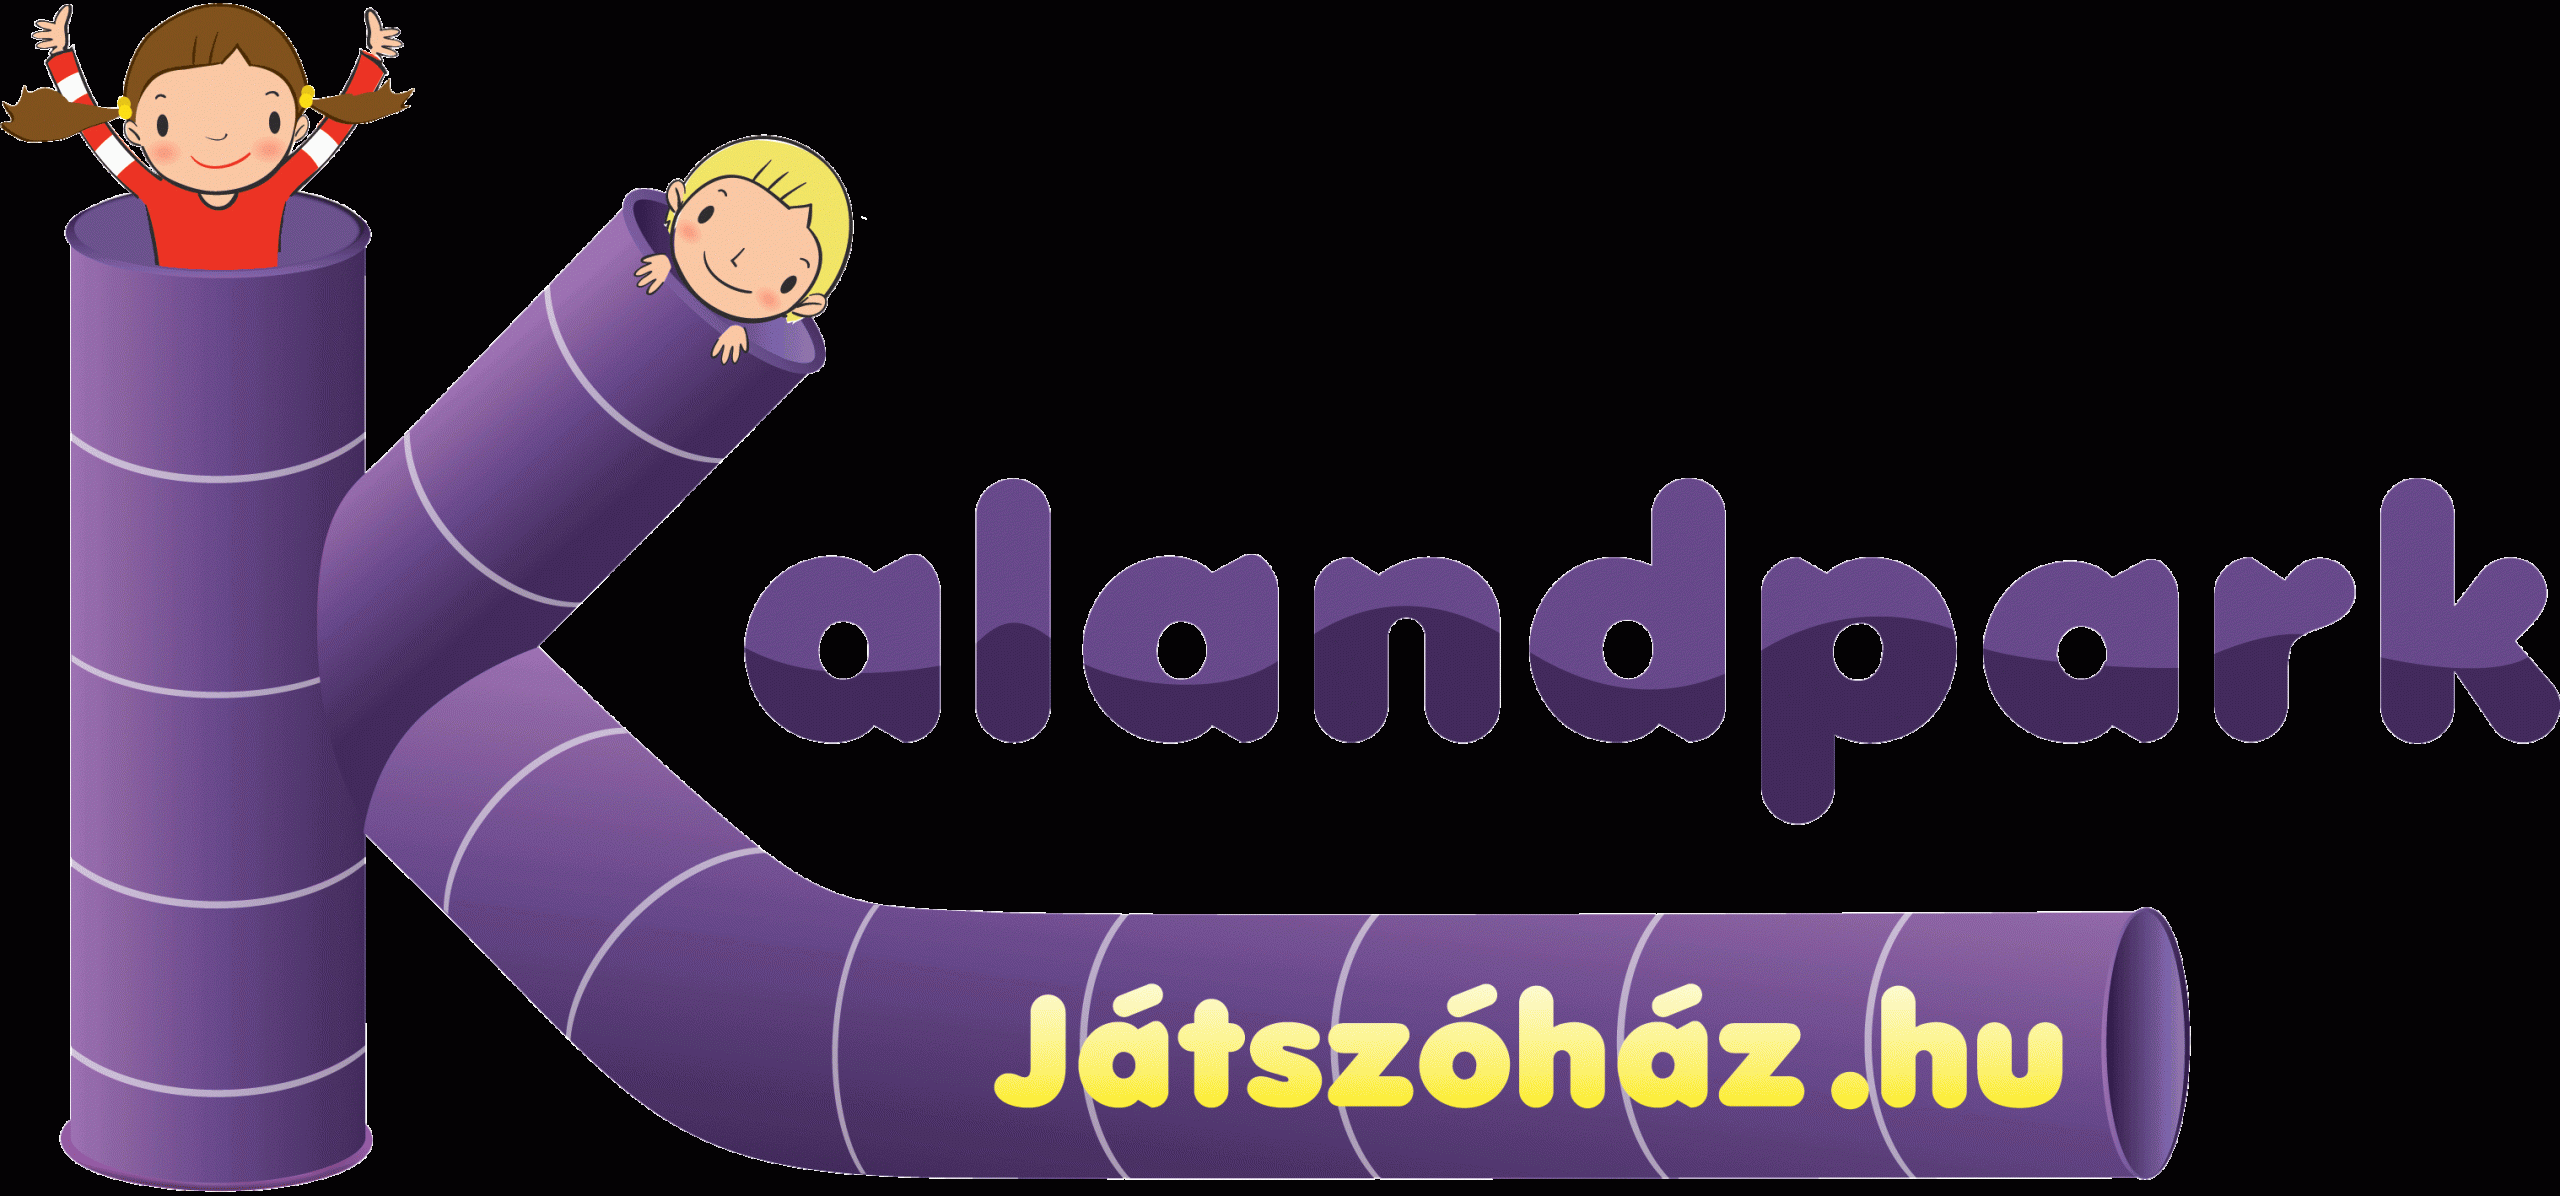 https://www.jatszohaz.hu/wp-content/uploads/2018/02/02_kalandpark_logo-scaled.gif